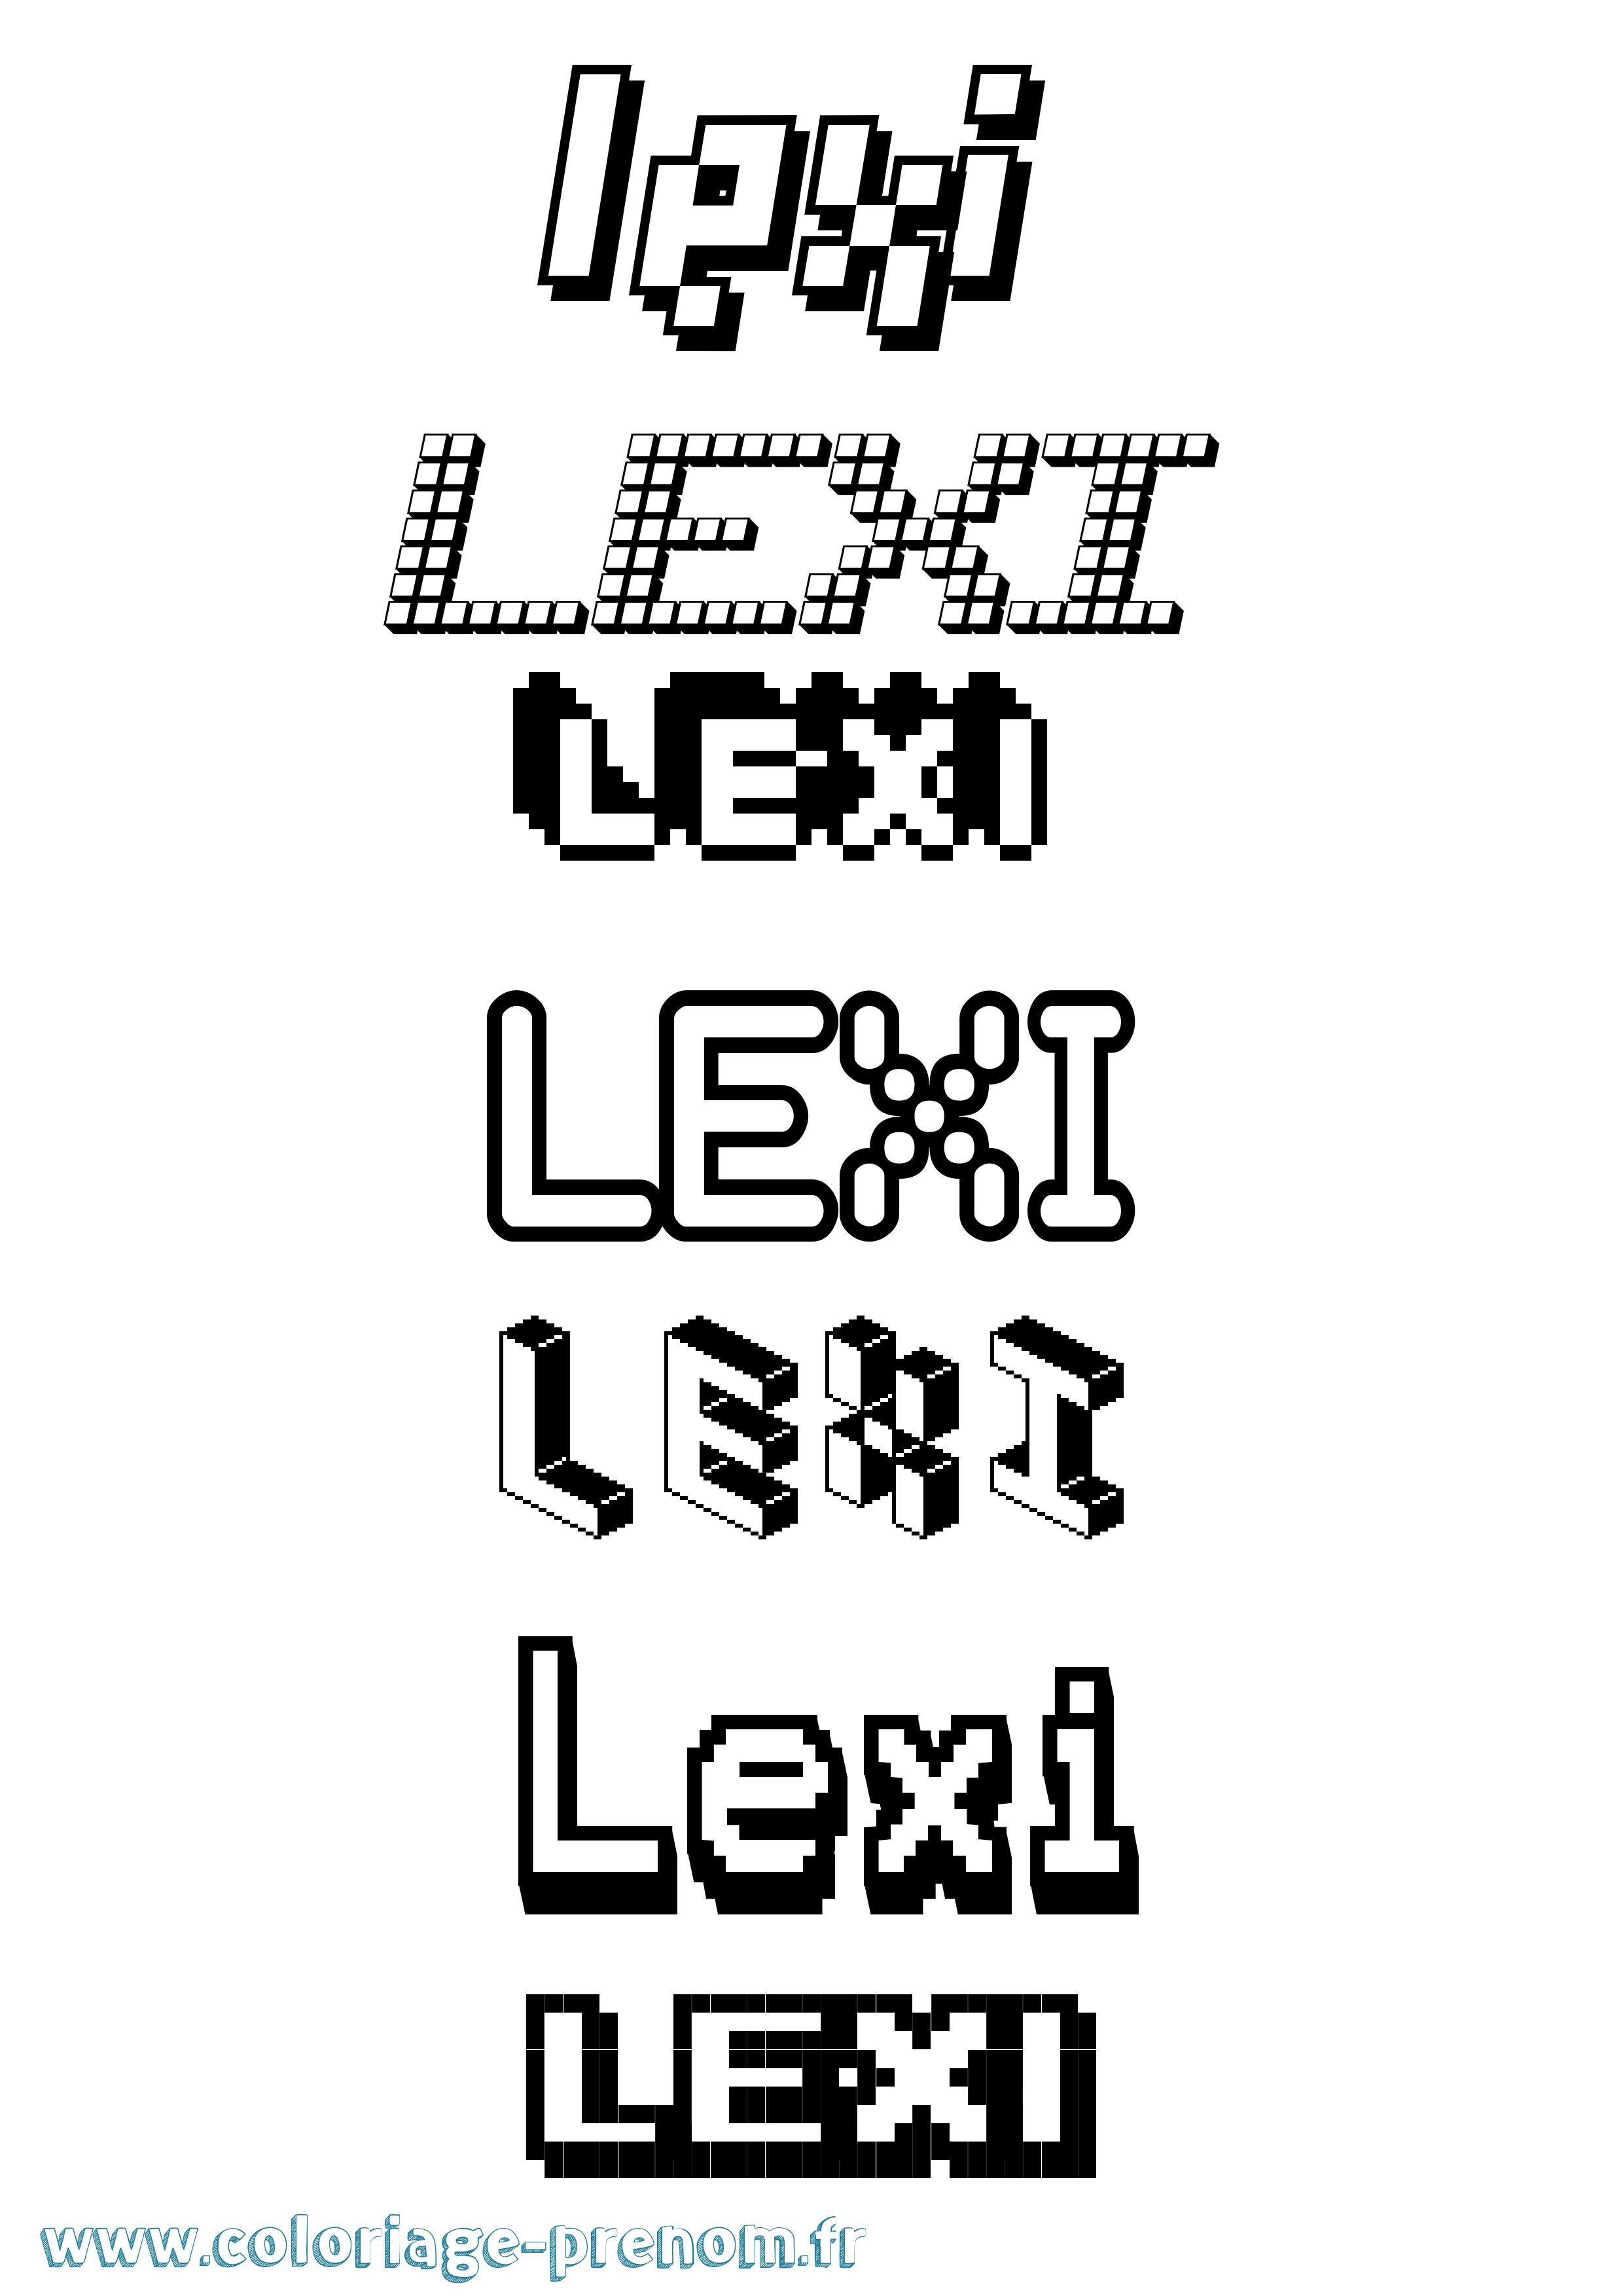 Coloriage prénom Lexi Pixel